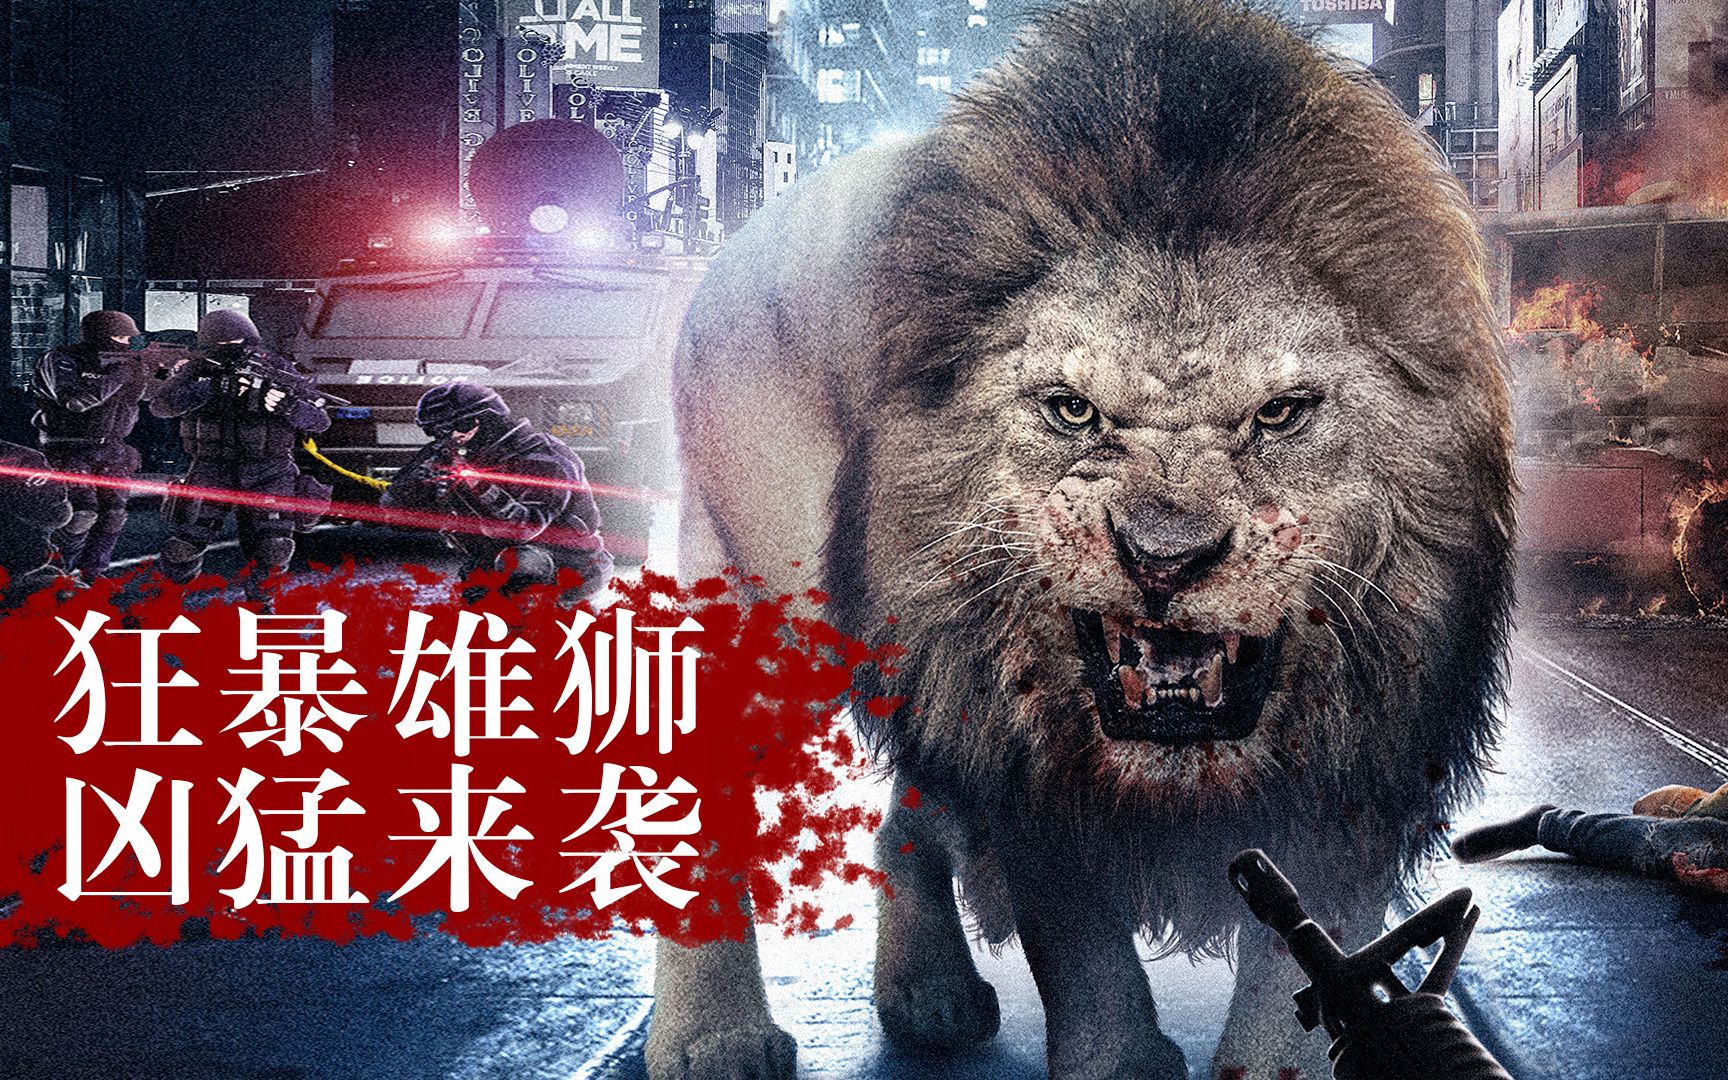 【憨憨哥】狂暴凶狮闯入城市，拥有超高智商，疯狂捕食人类，惊悚电影